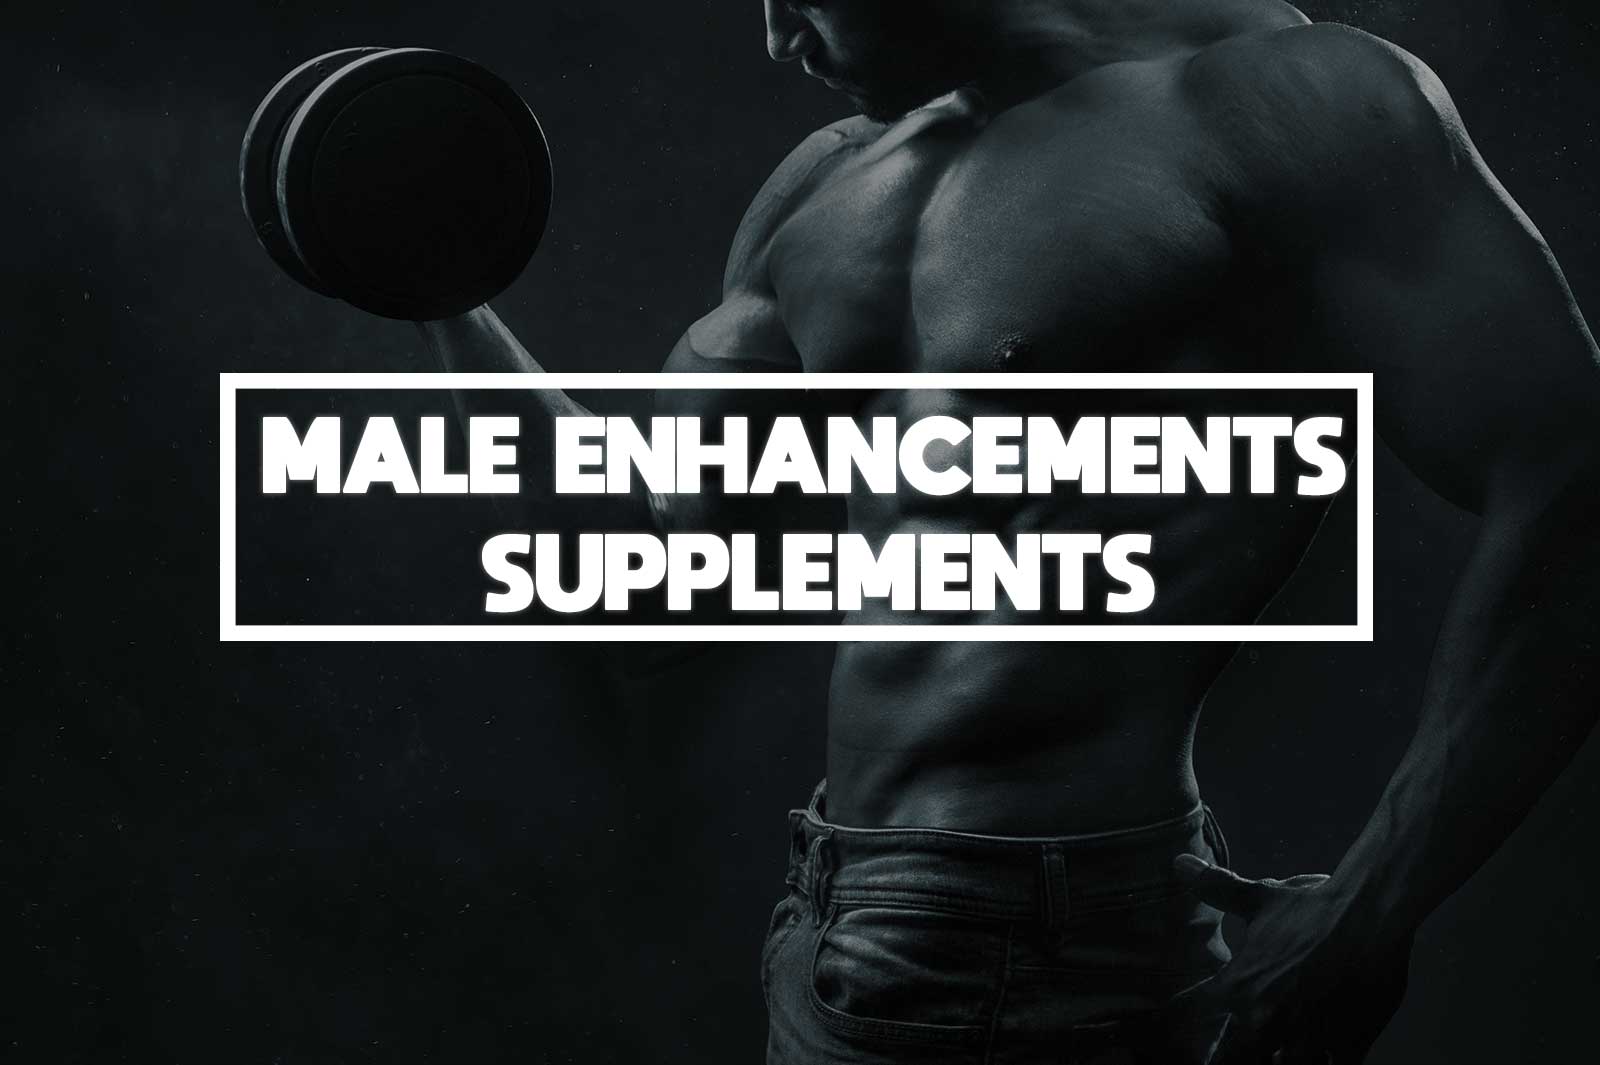 Advantages of Male Enhancement Supplements